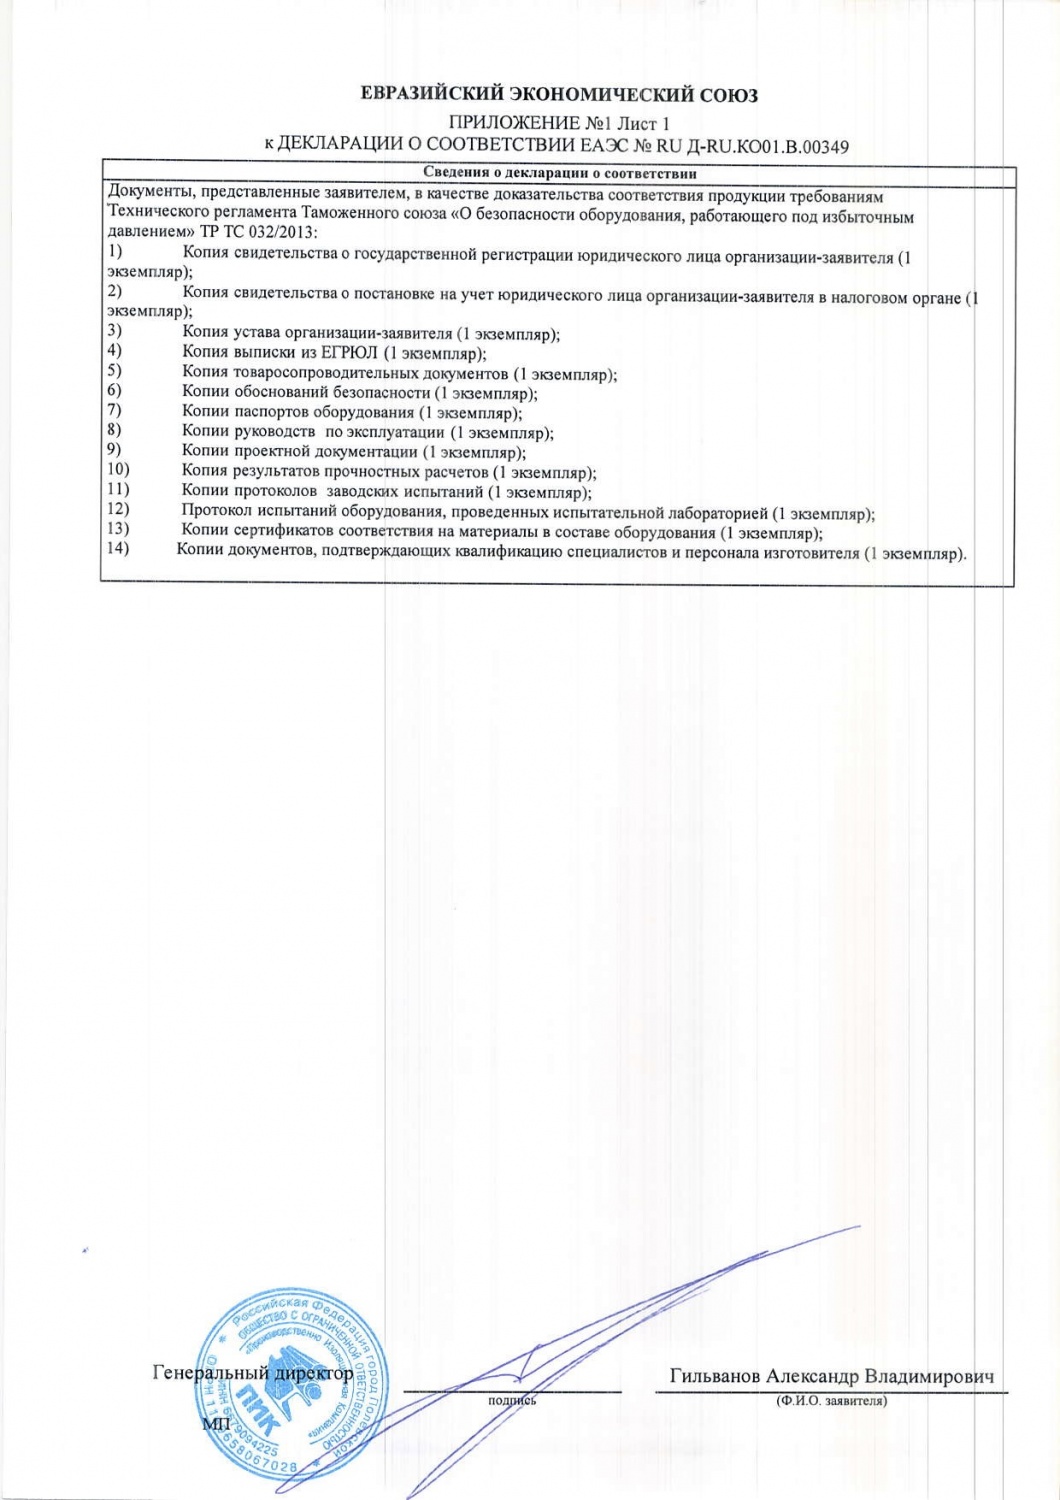 Декларация о соответствии EAЭС№RU Д-RU.КО01.В.00349_приложение